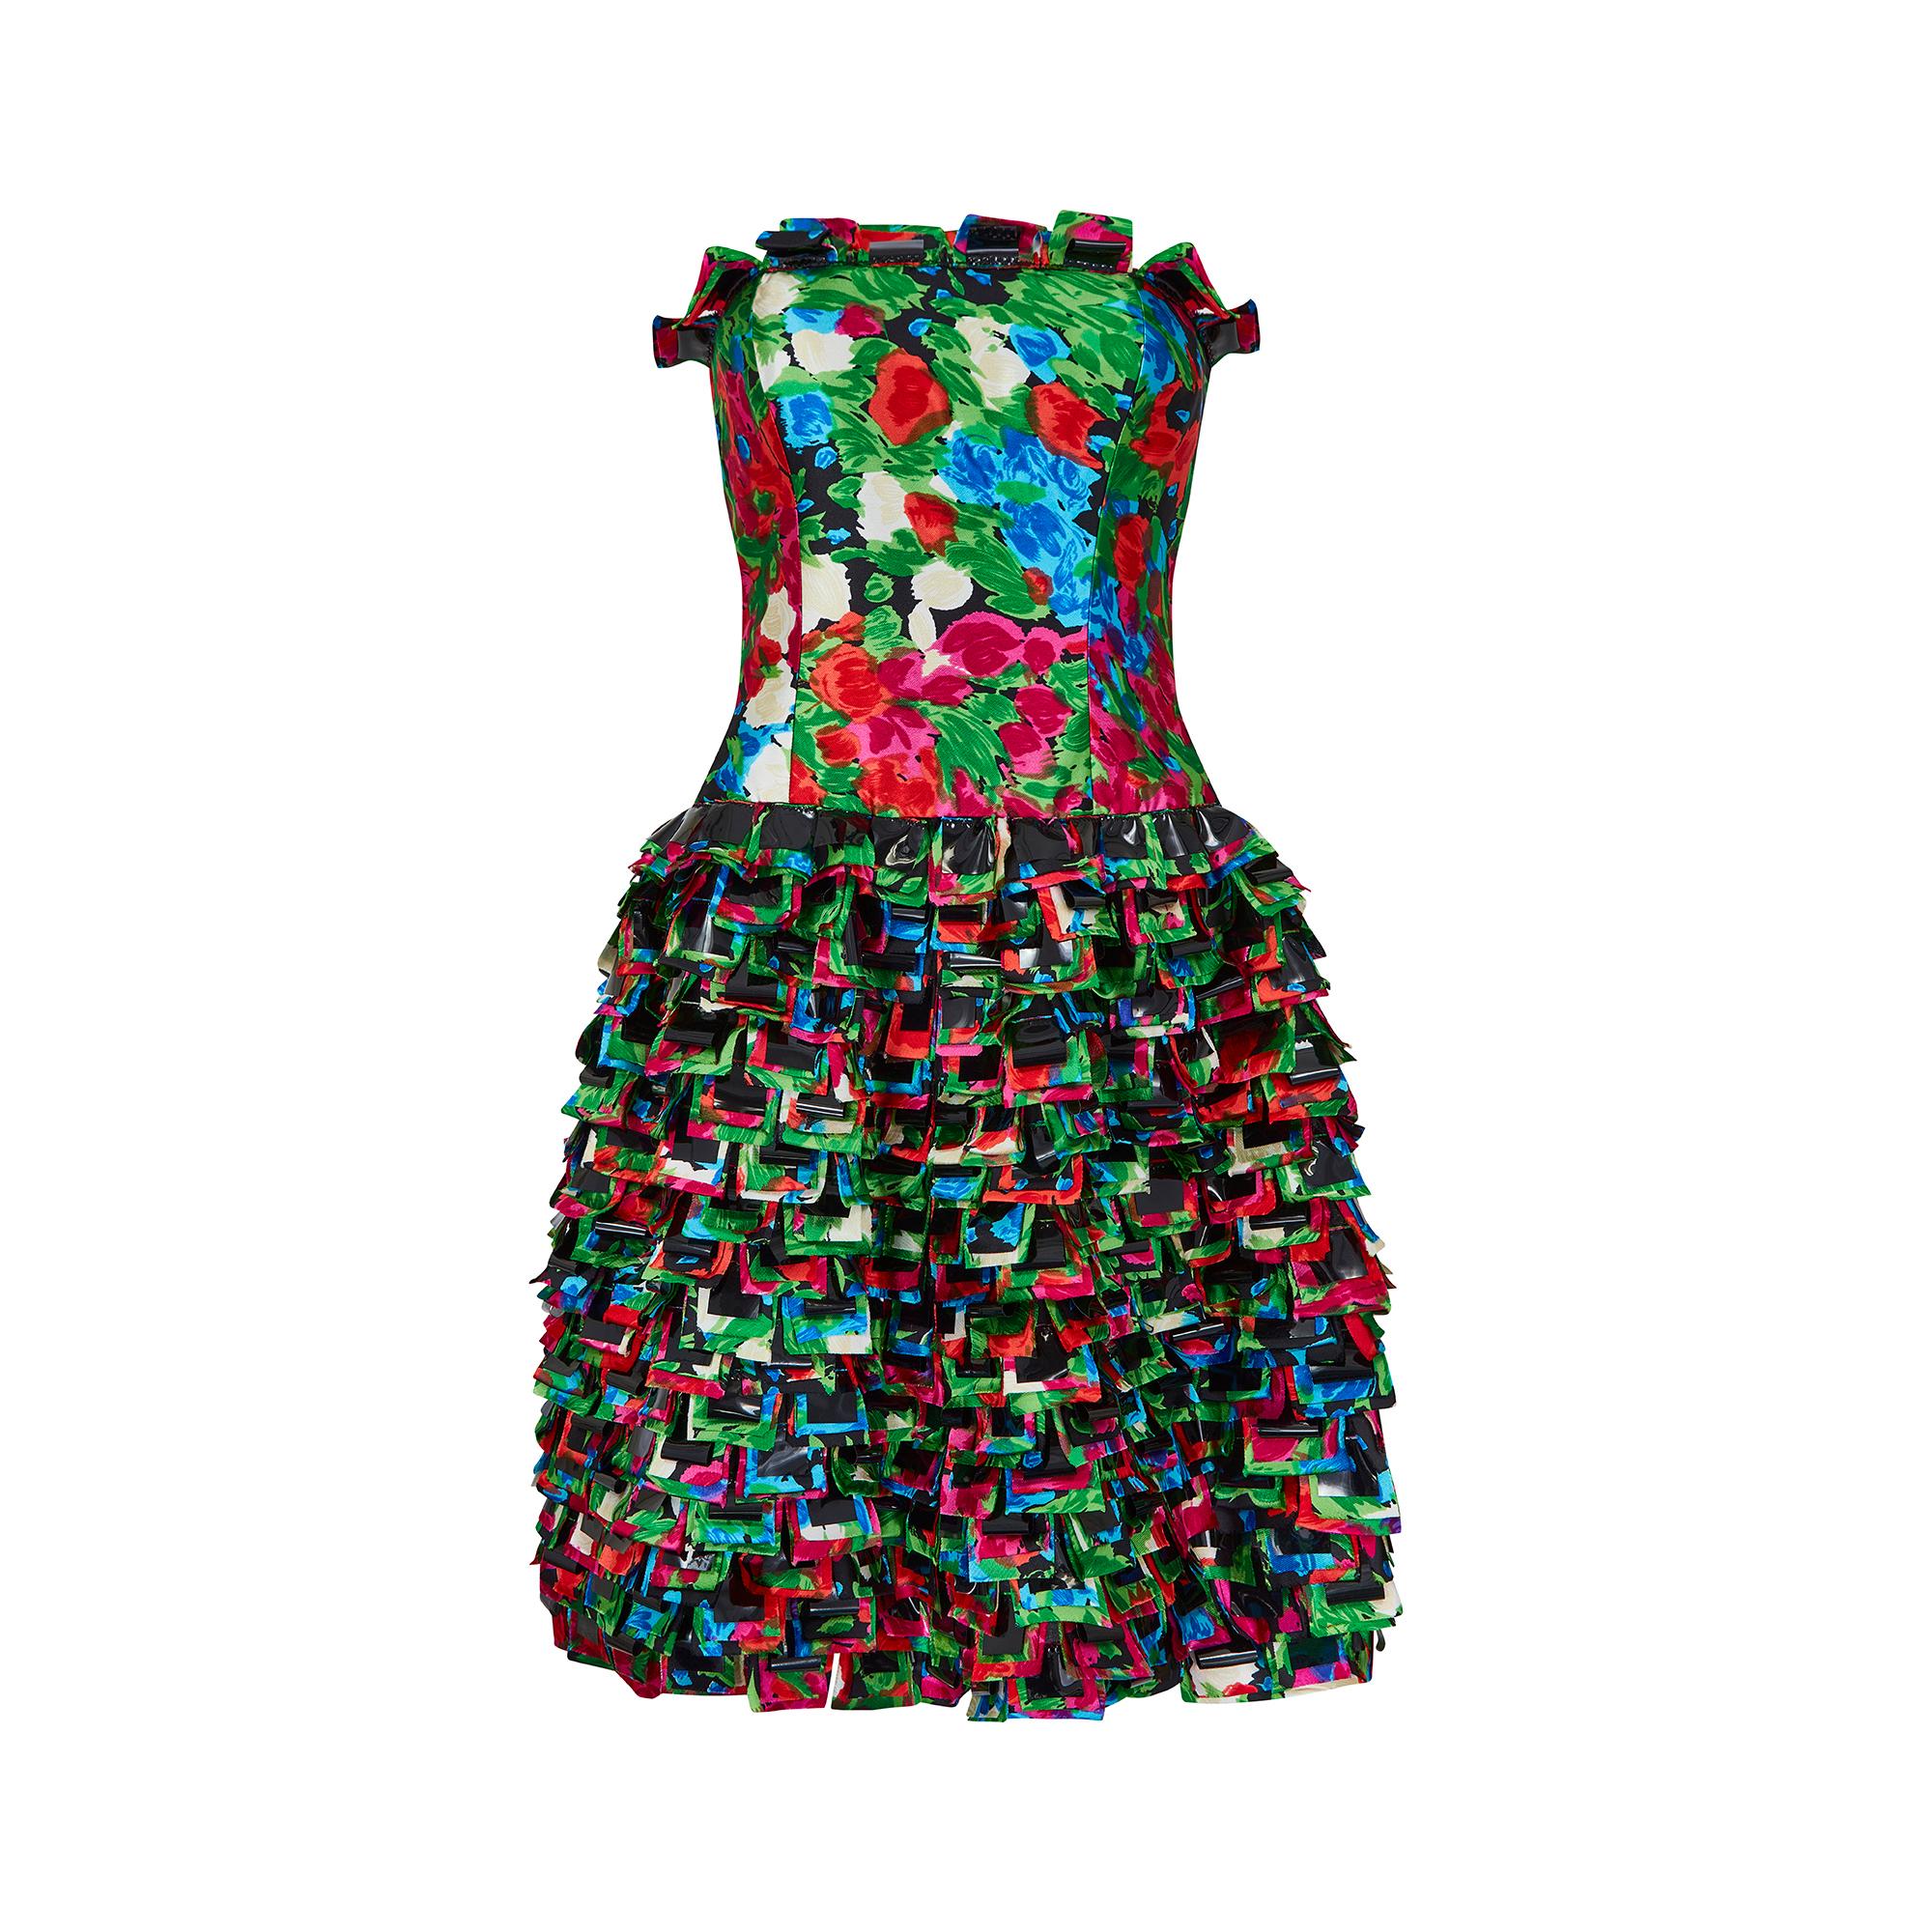 Dieses verspielte, vom Laufsteg dokumentierte Kleid ist von Oscar de la Renta aus der Pre Fall 2008 Kollektion. Das Kleid ist aus leuchtend bedruckter Seide mit roten, rosa, grünen, blauen und weißen Blumen in einem auffälligen, fast abstrakten